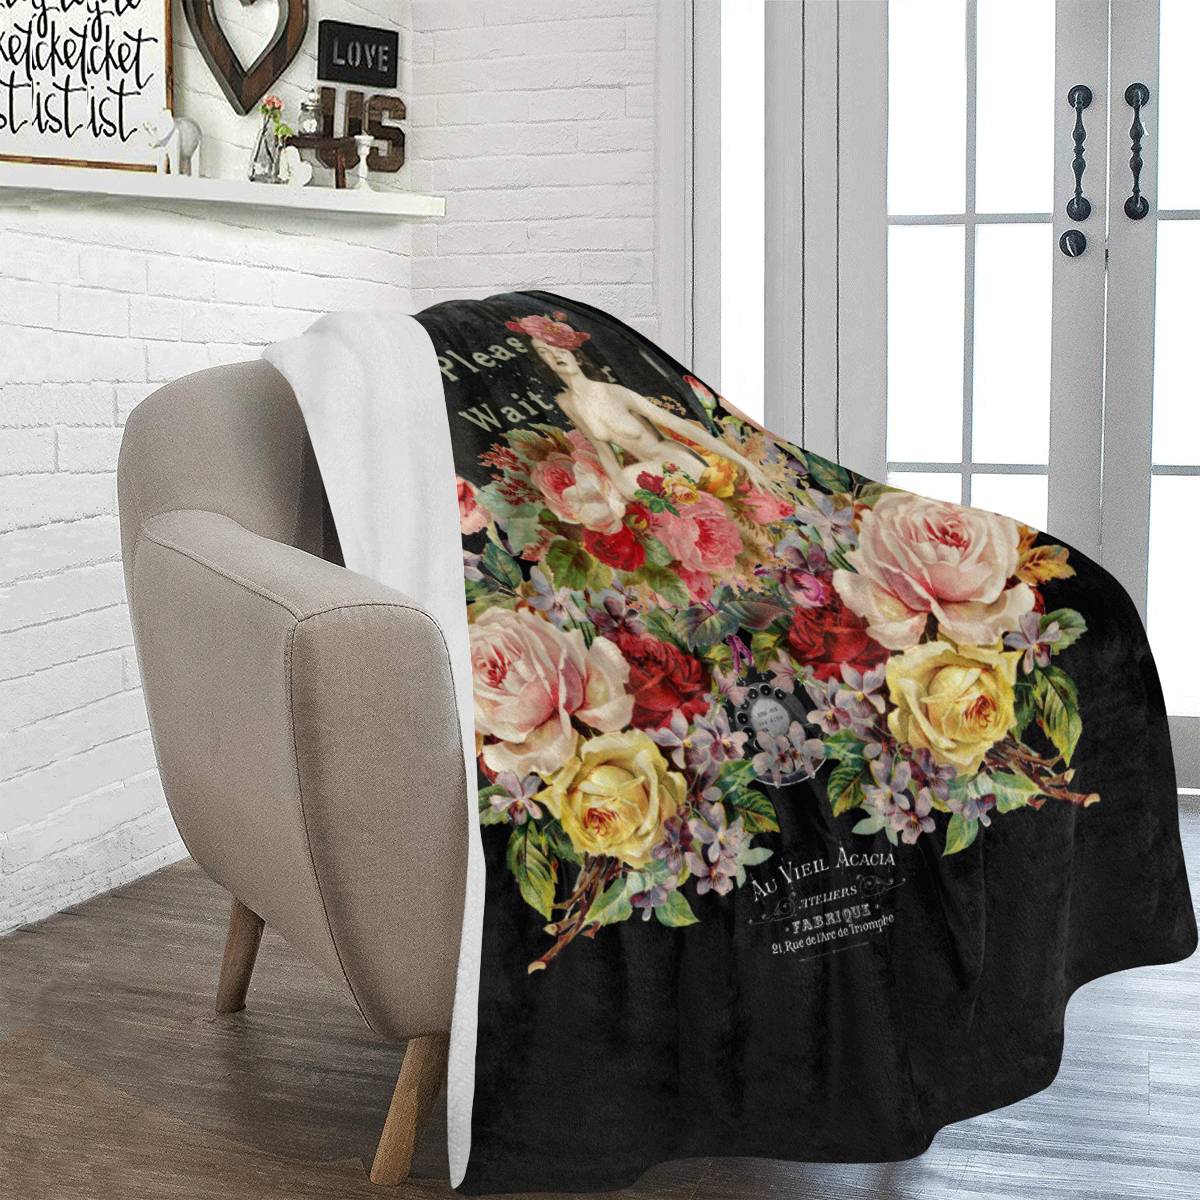 Nuit des Roses pour Elle Ultra-Soft Micro Fleece Blanket 60"x80"